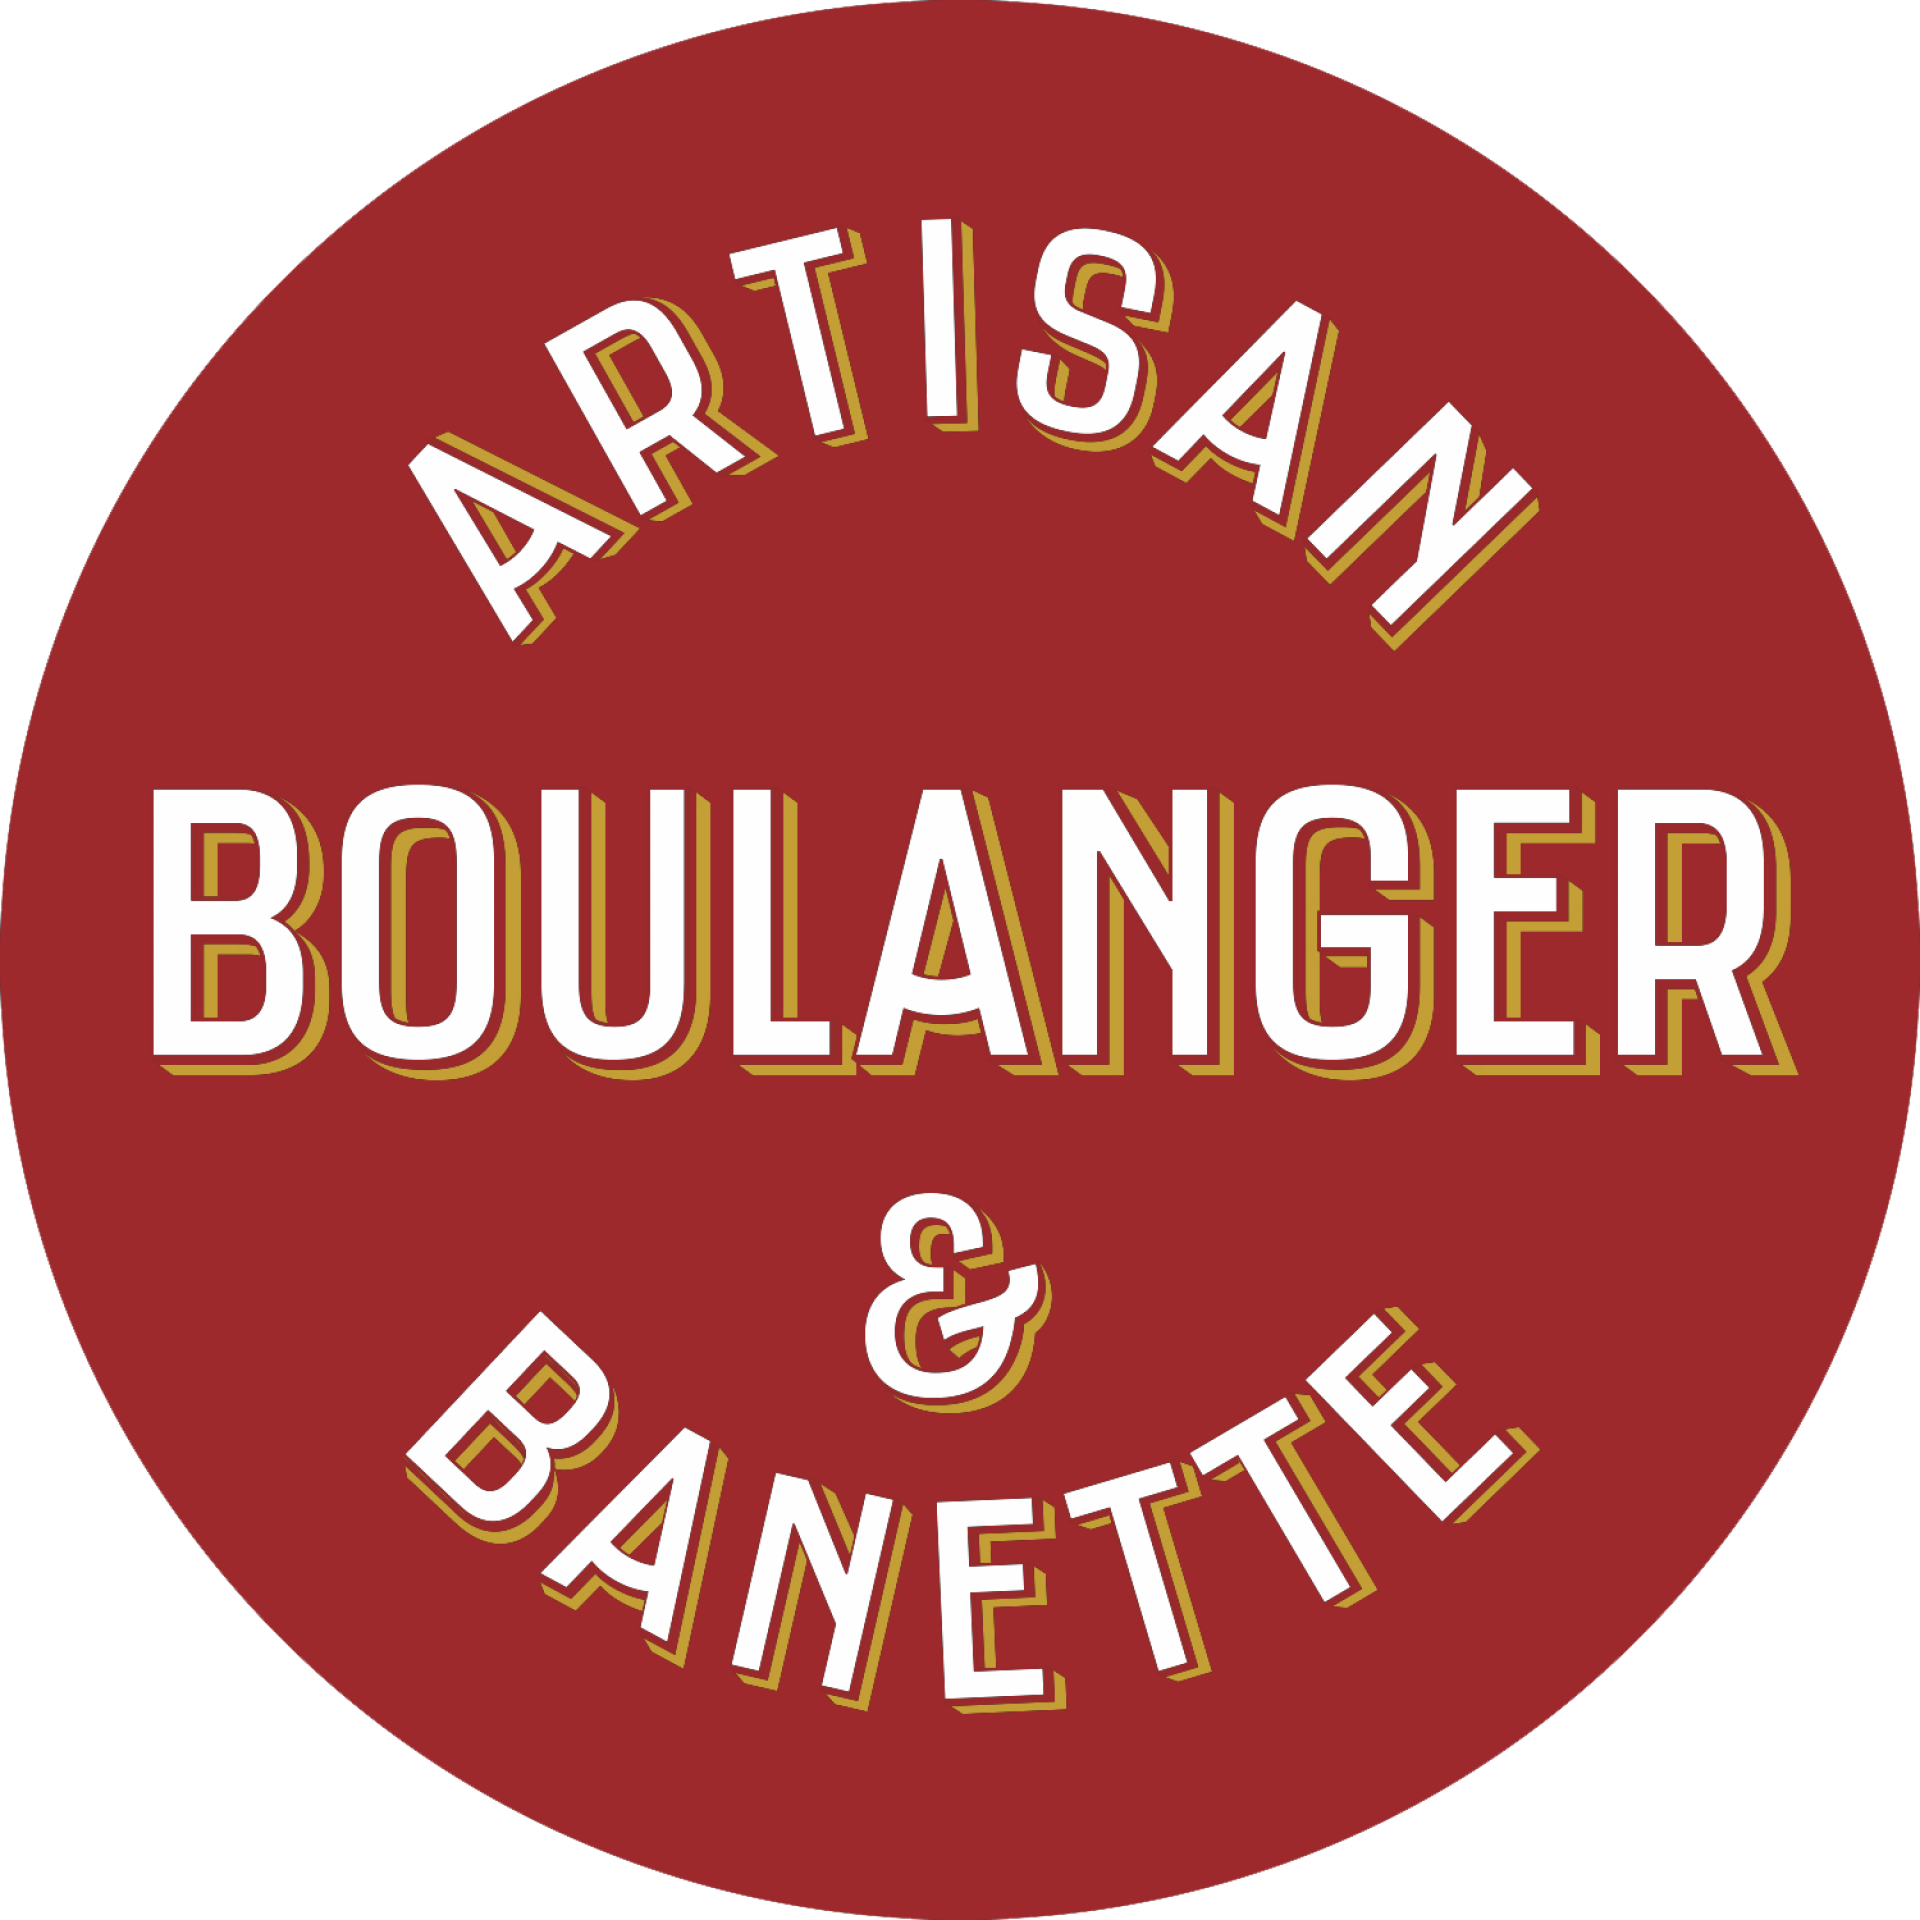 Boulangerie de Ben logo